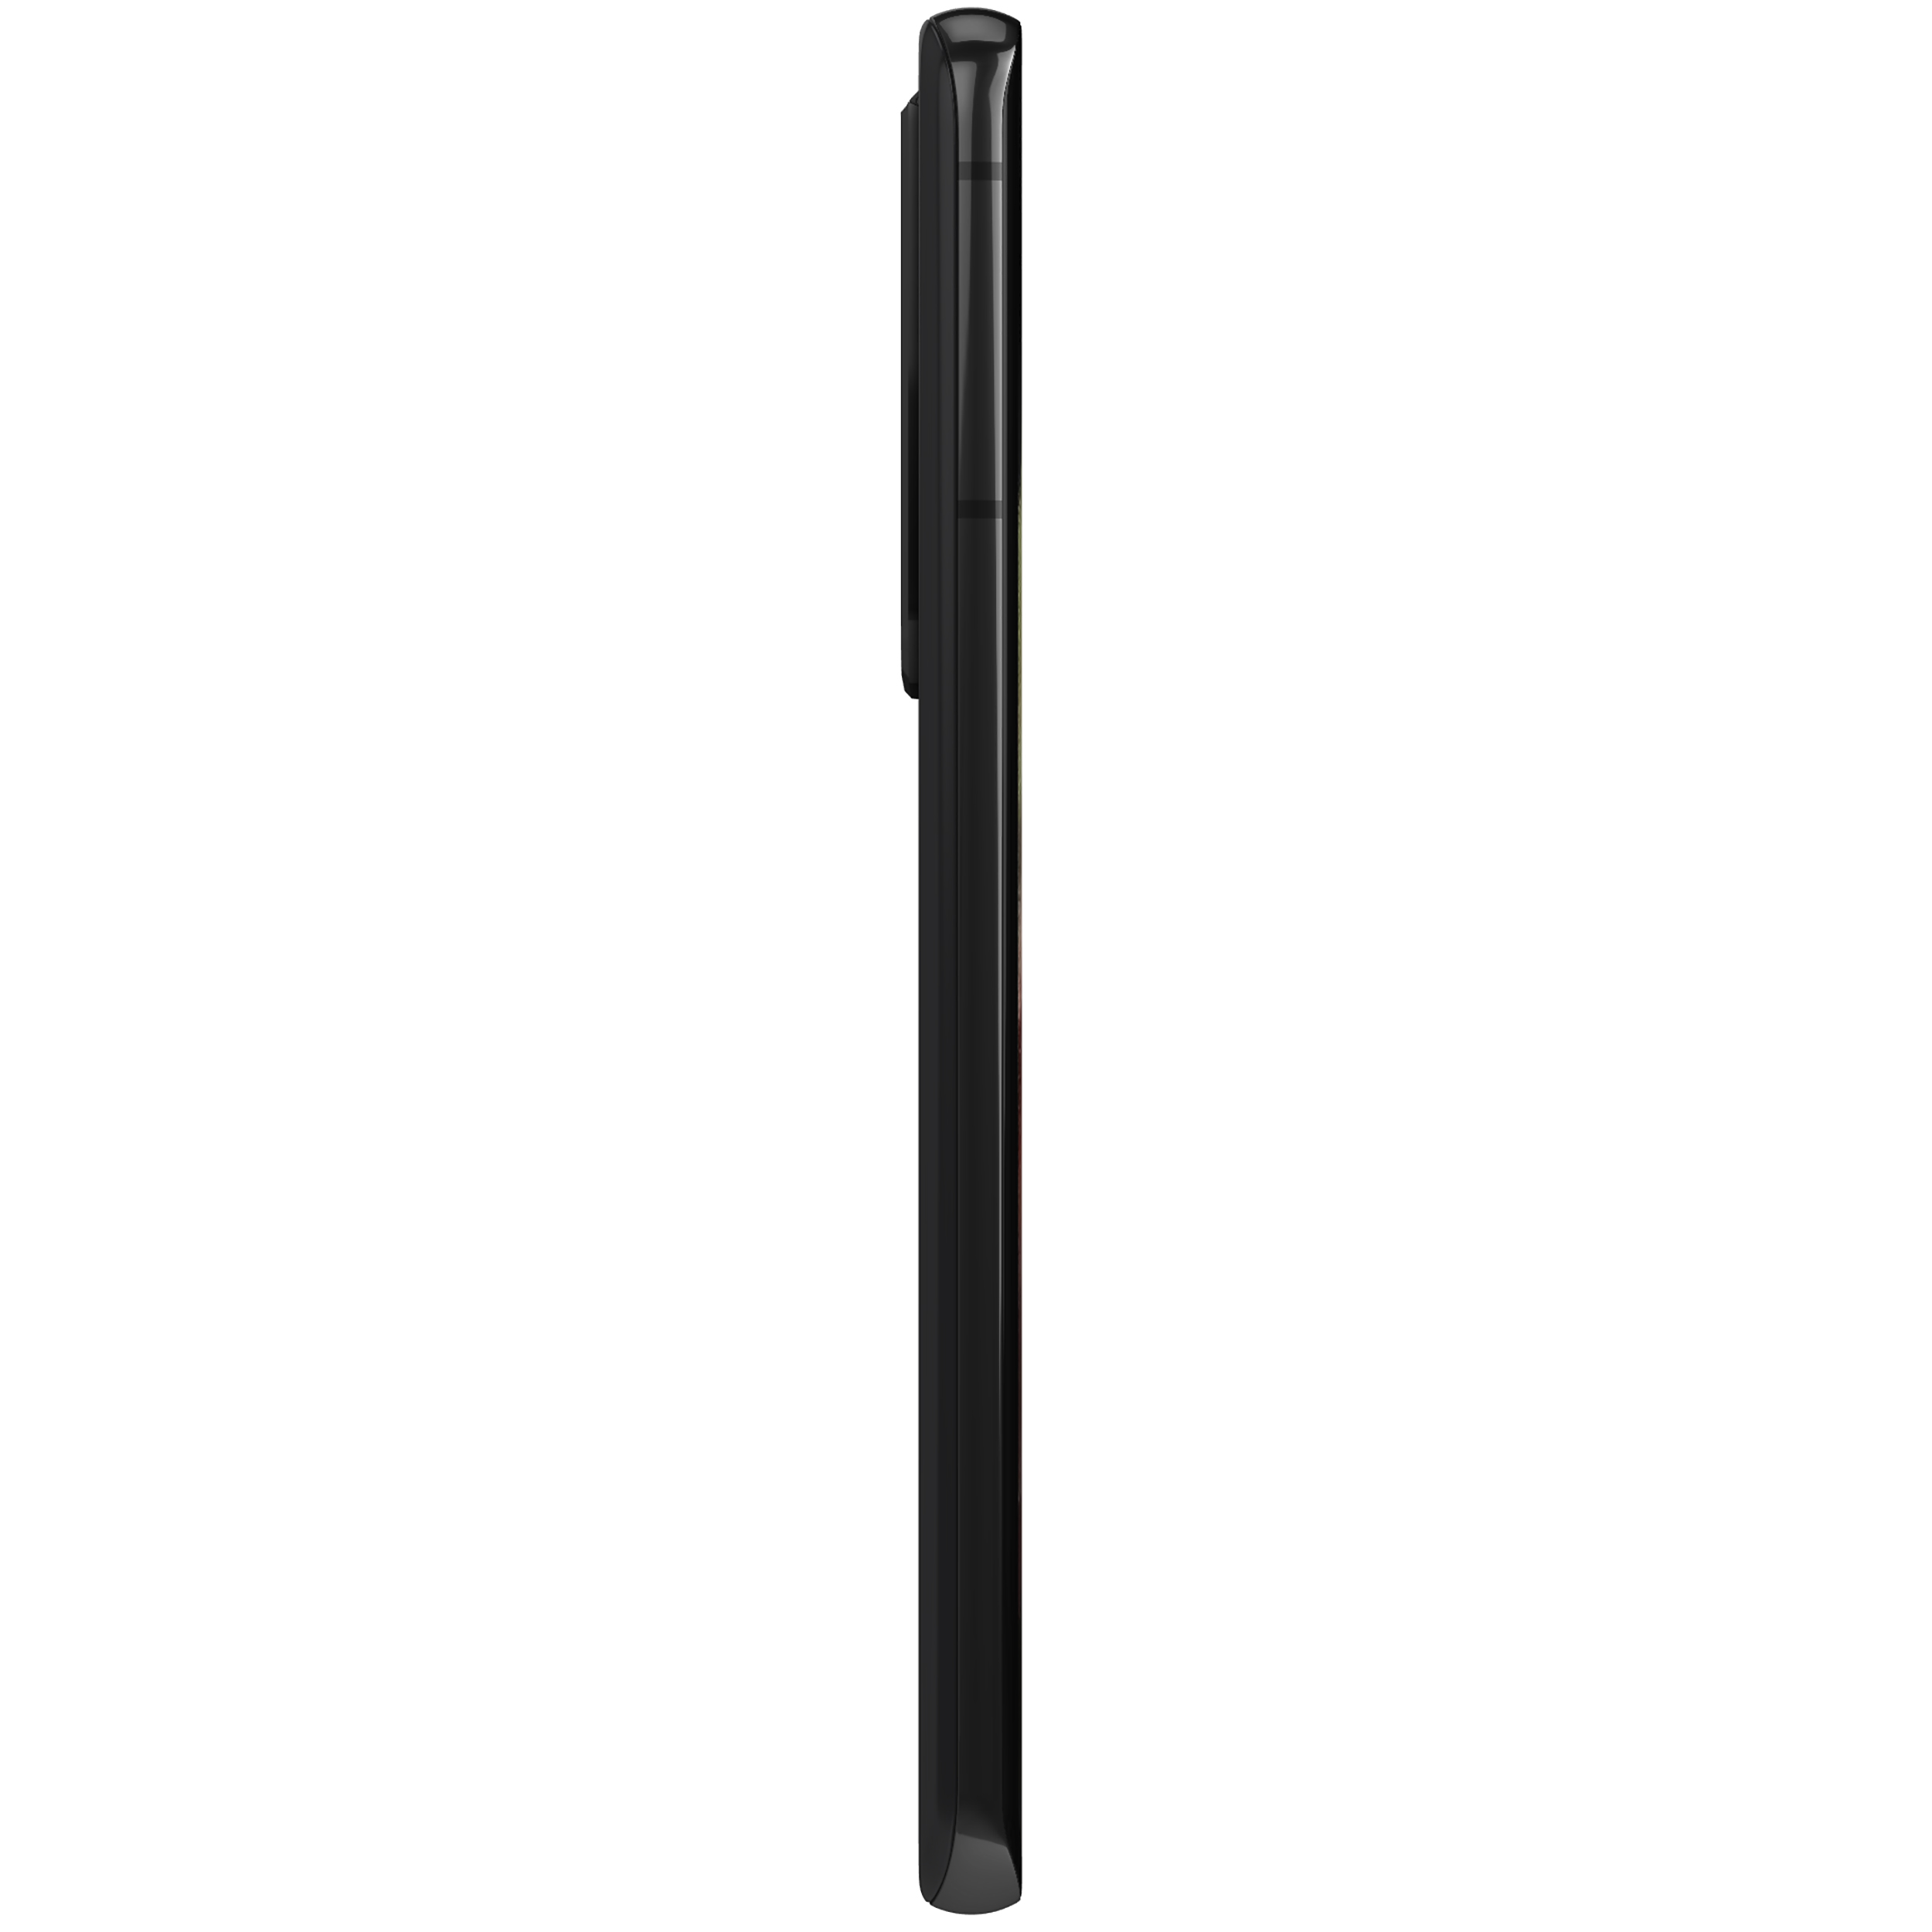 گوشی موبایل سامسونگ مدل Galaxy S21 Ultra 5G SM-G998B/DS دو سیم کارت ظرفیت 128 گیگابایت و رم 12 گیگابایت